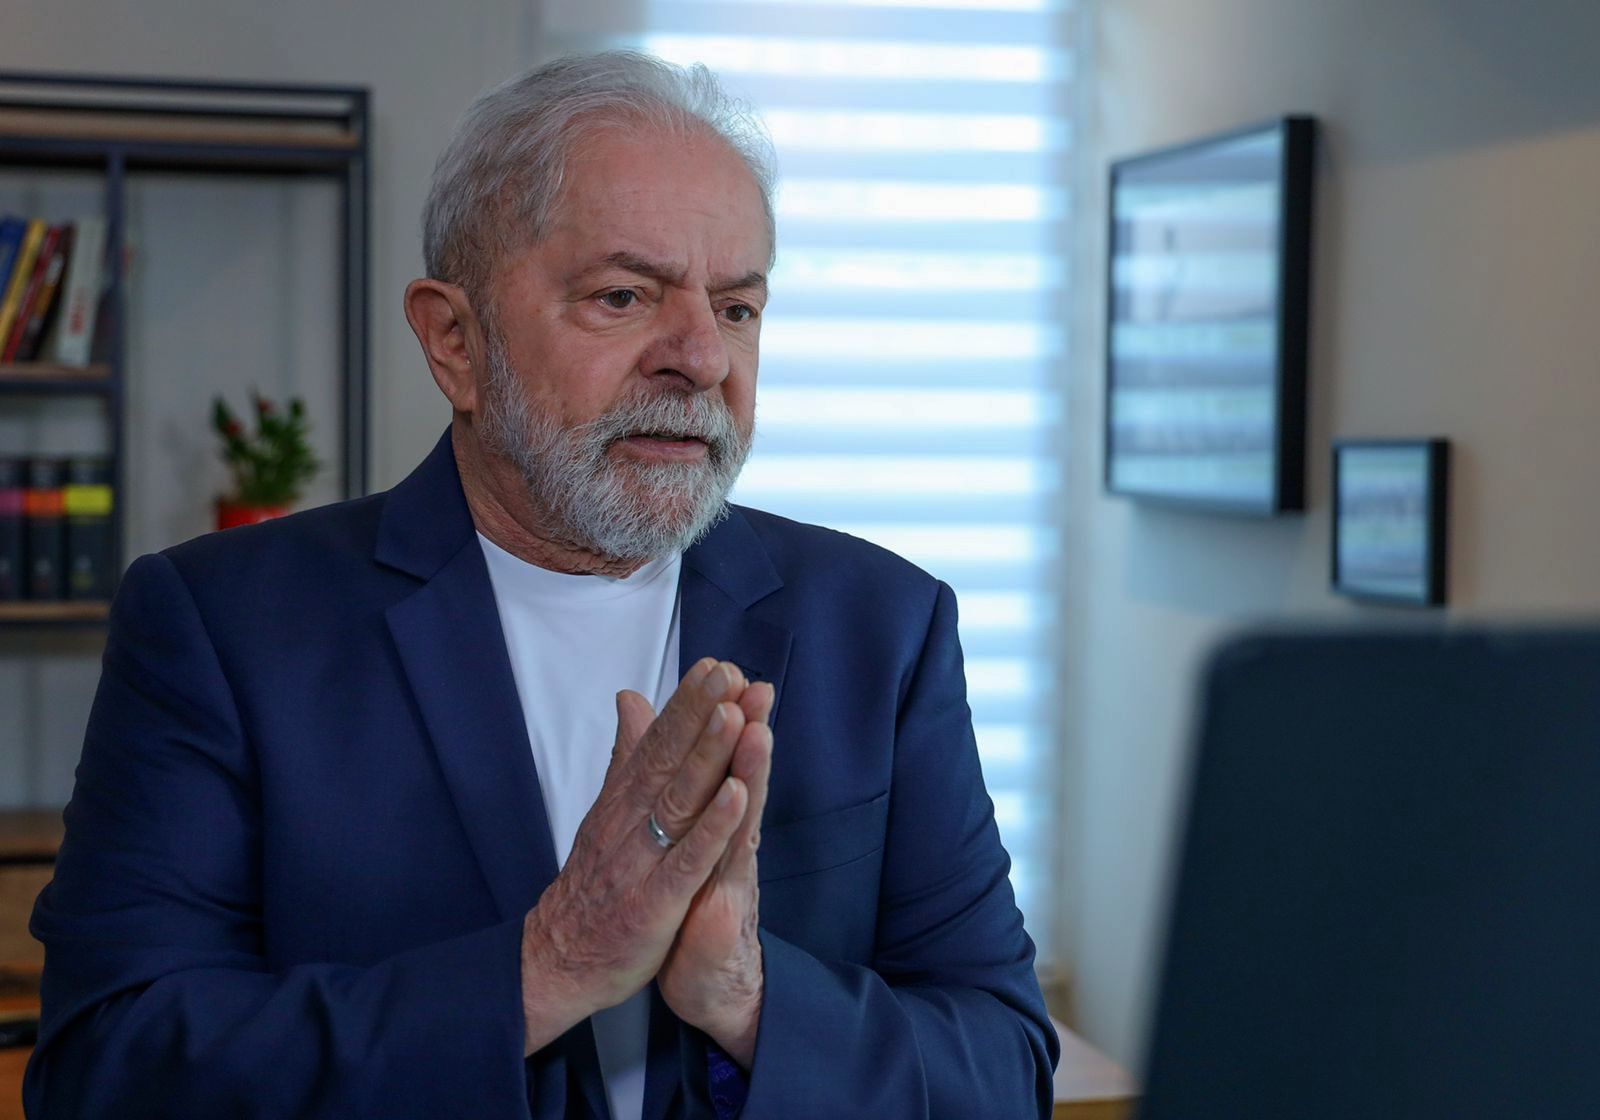 A boa e a má notícia para Lula, segundo pesquisa do PT | VEJA